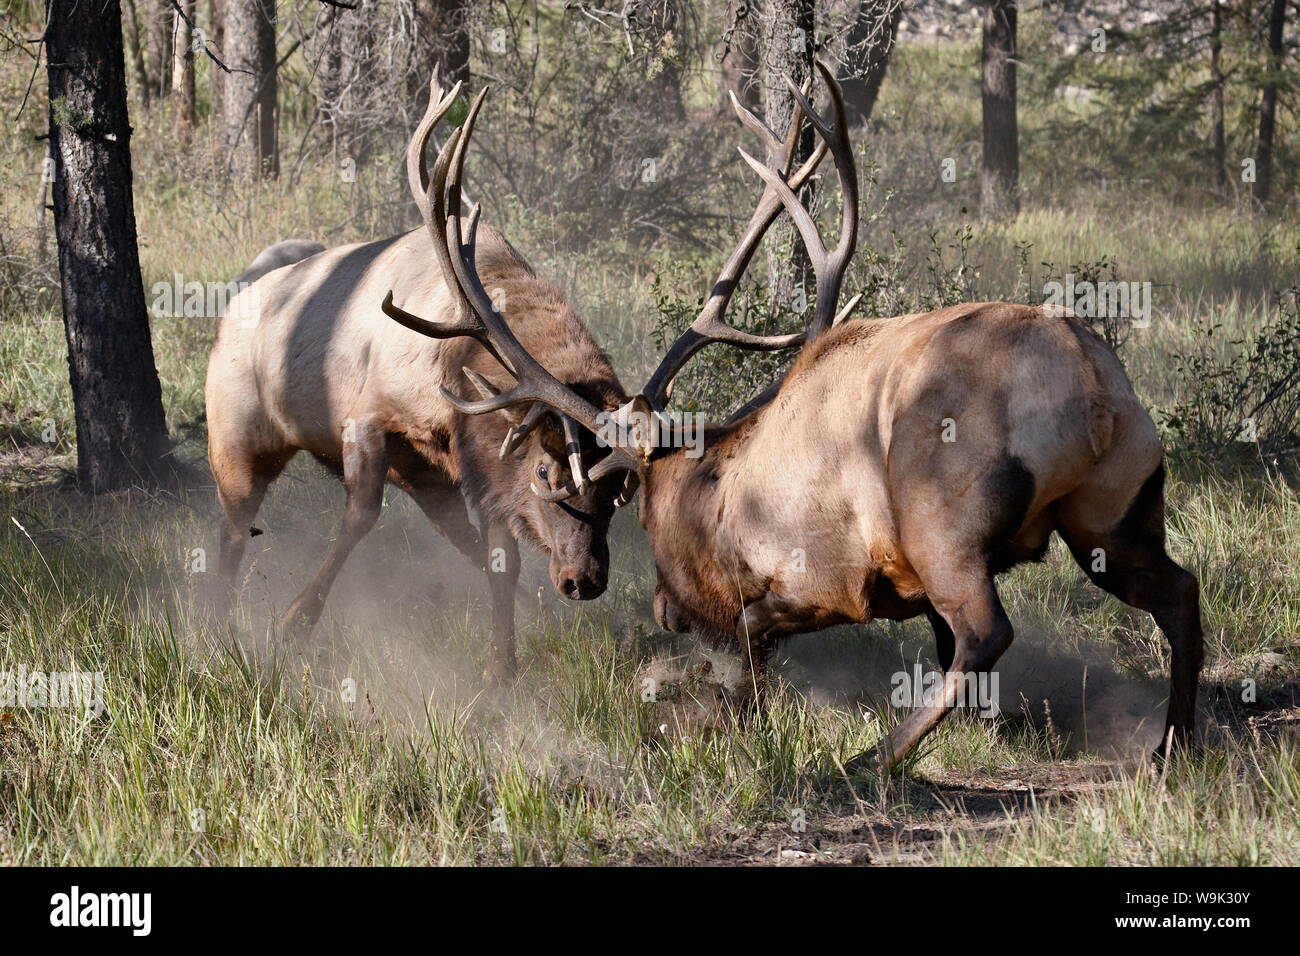 Deux bull le wapiti (Cervus canadensis) combats, Jasper National Park, Alberta, Canada, Amérique du Nord Banque D'Images